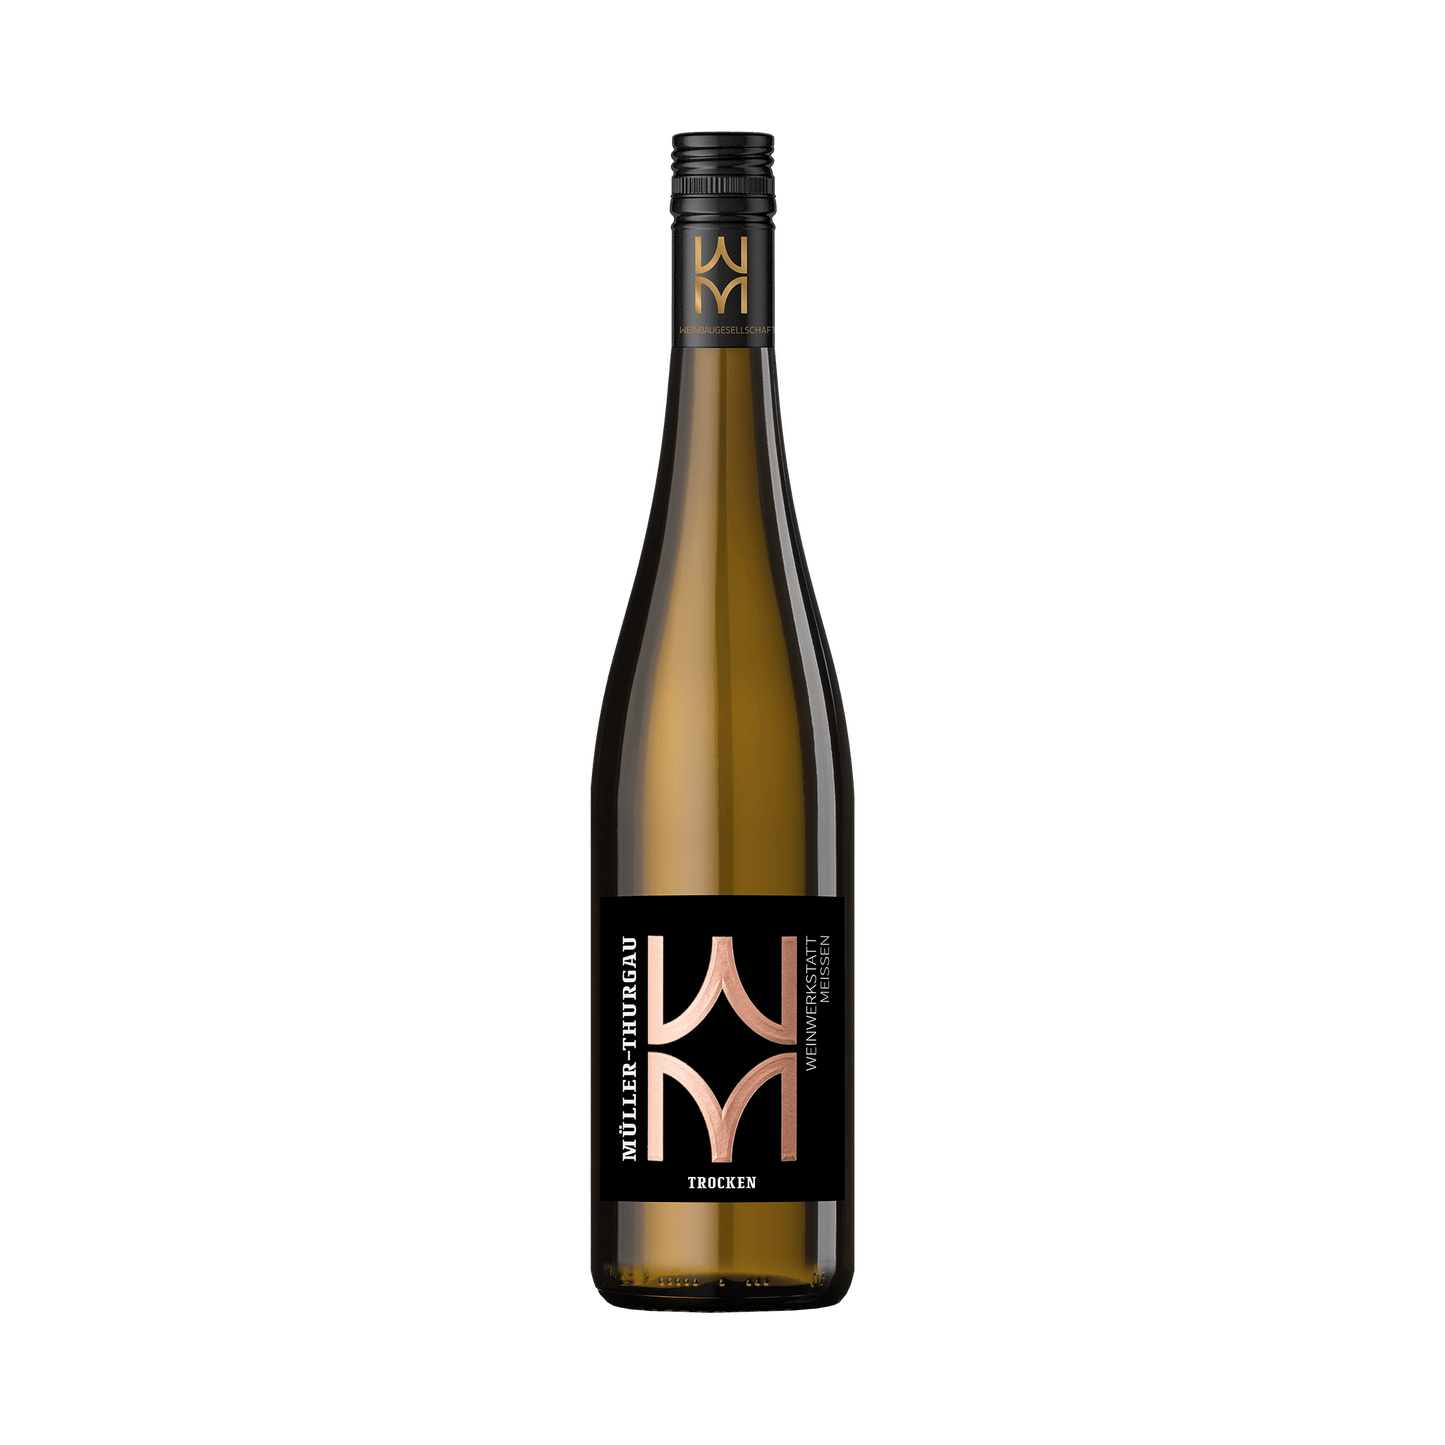 Weinwerkstatt Basis Müller Thurgau aus Sachsen gehört zu den beliebtesten Weinen aus Meißen. Ein unkomplizierter Wein für Feste und Feiern, der auch als Weisswein Geschenkidee Eindruck macht.